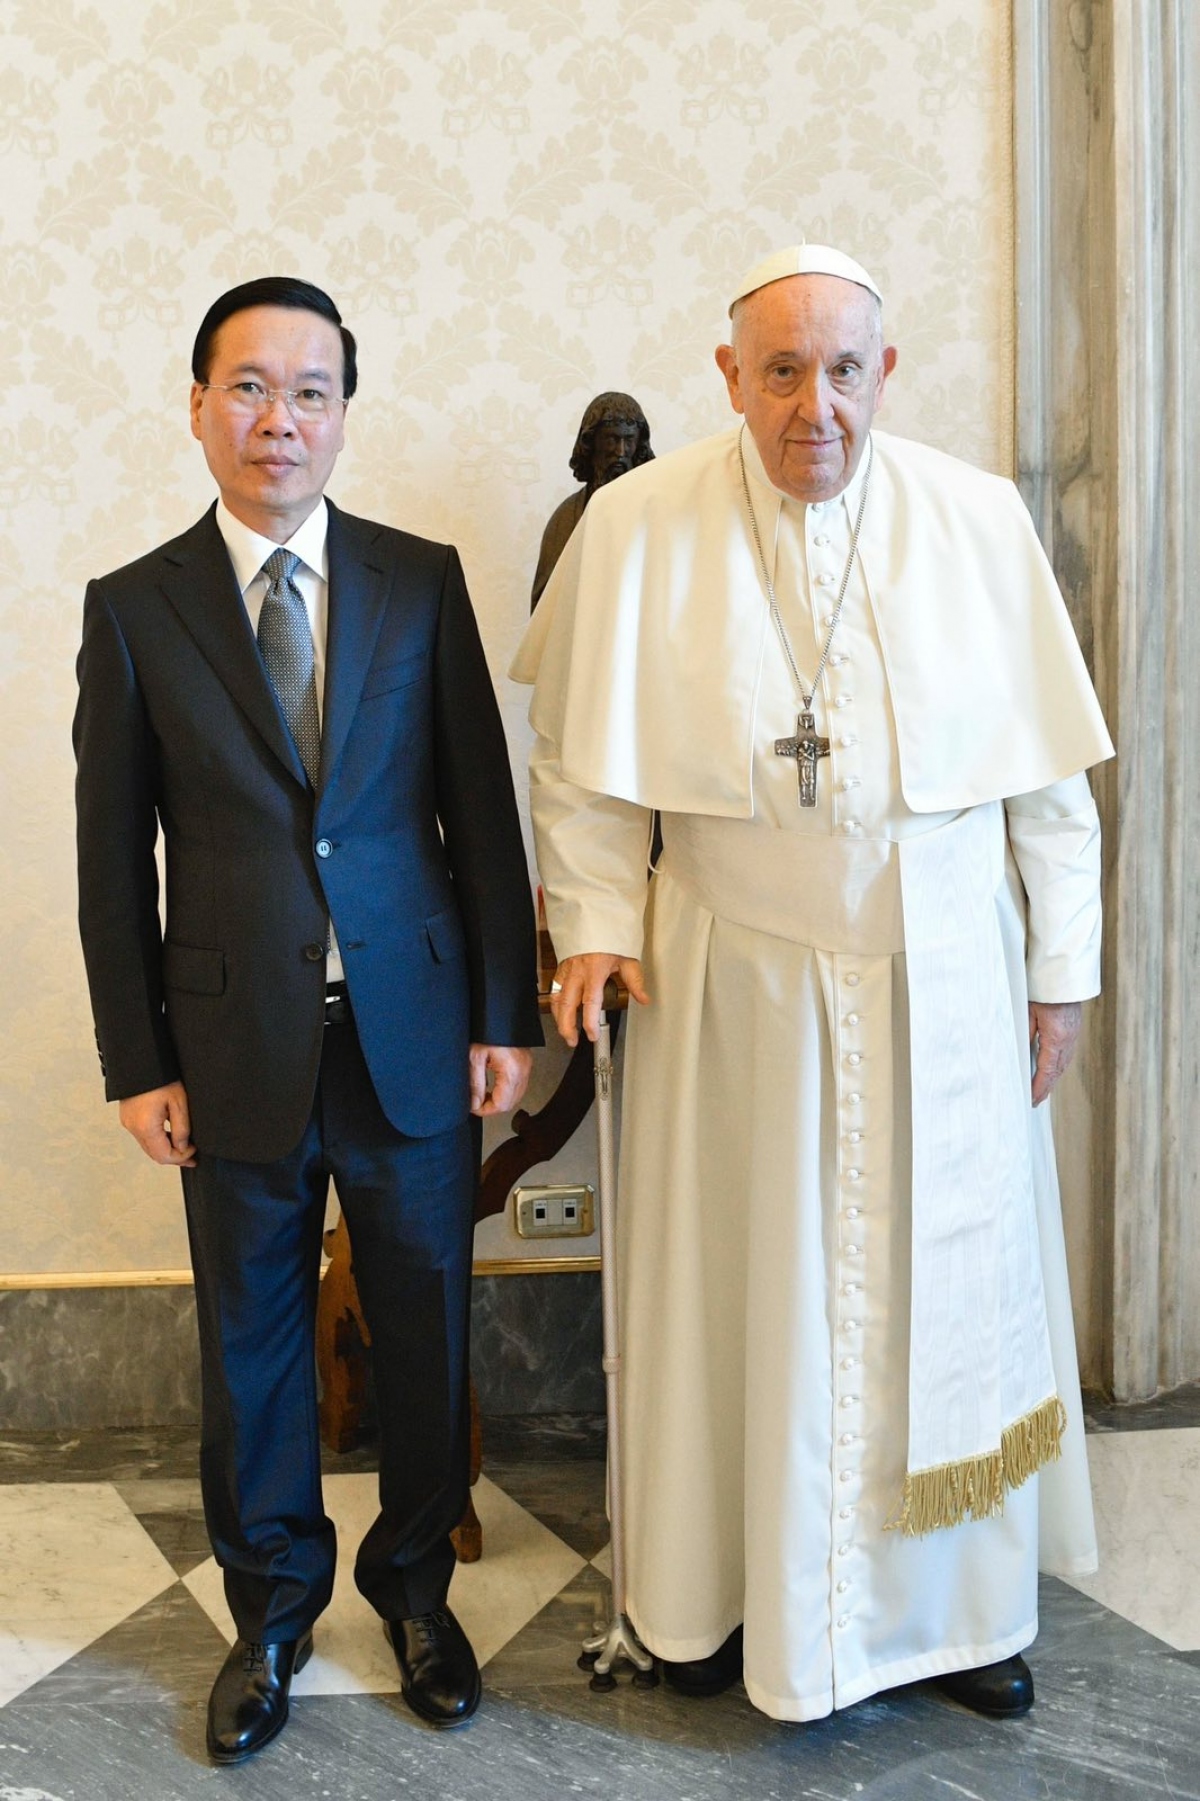 Toàn cảnh chuyến thăm Cộng hòa Italy và Tòa thánh Vatican của Chủ tịch nước - Ảnh 13.